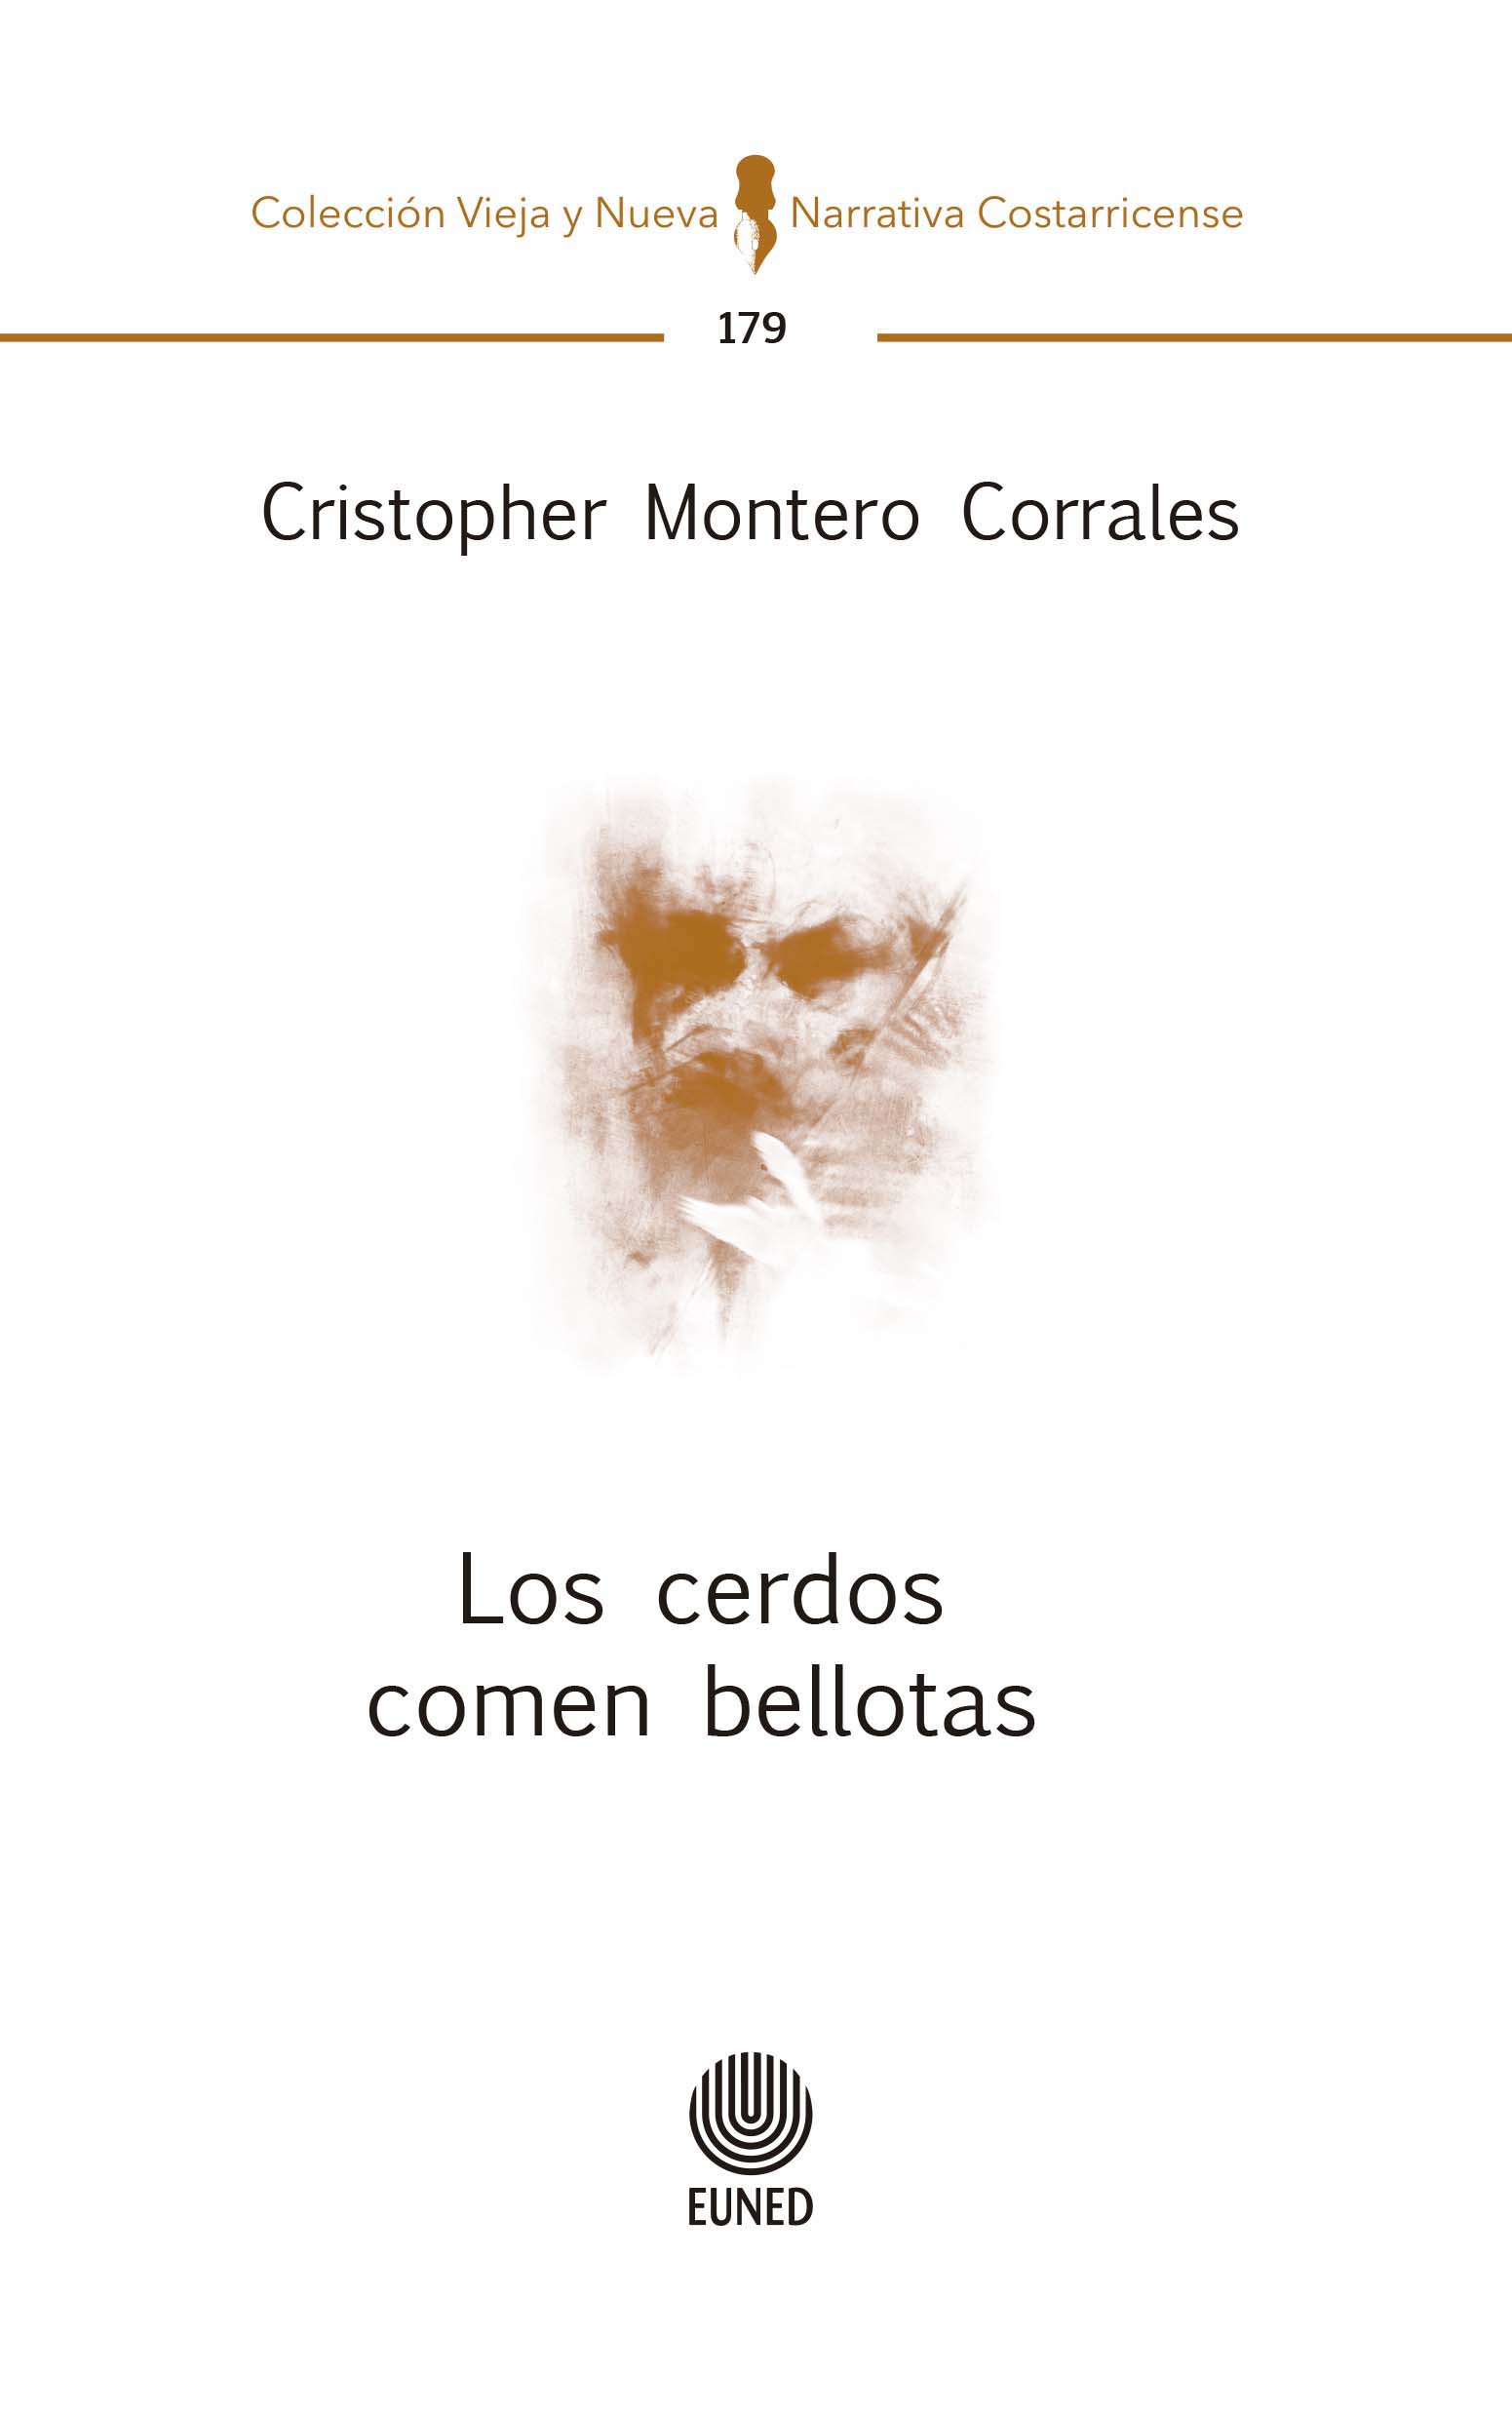 "Los cerdos comen bellotas" de Cristopher Montero